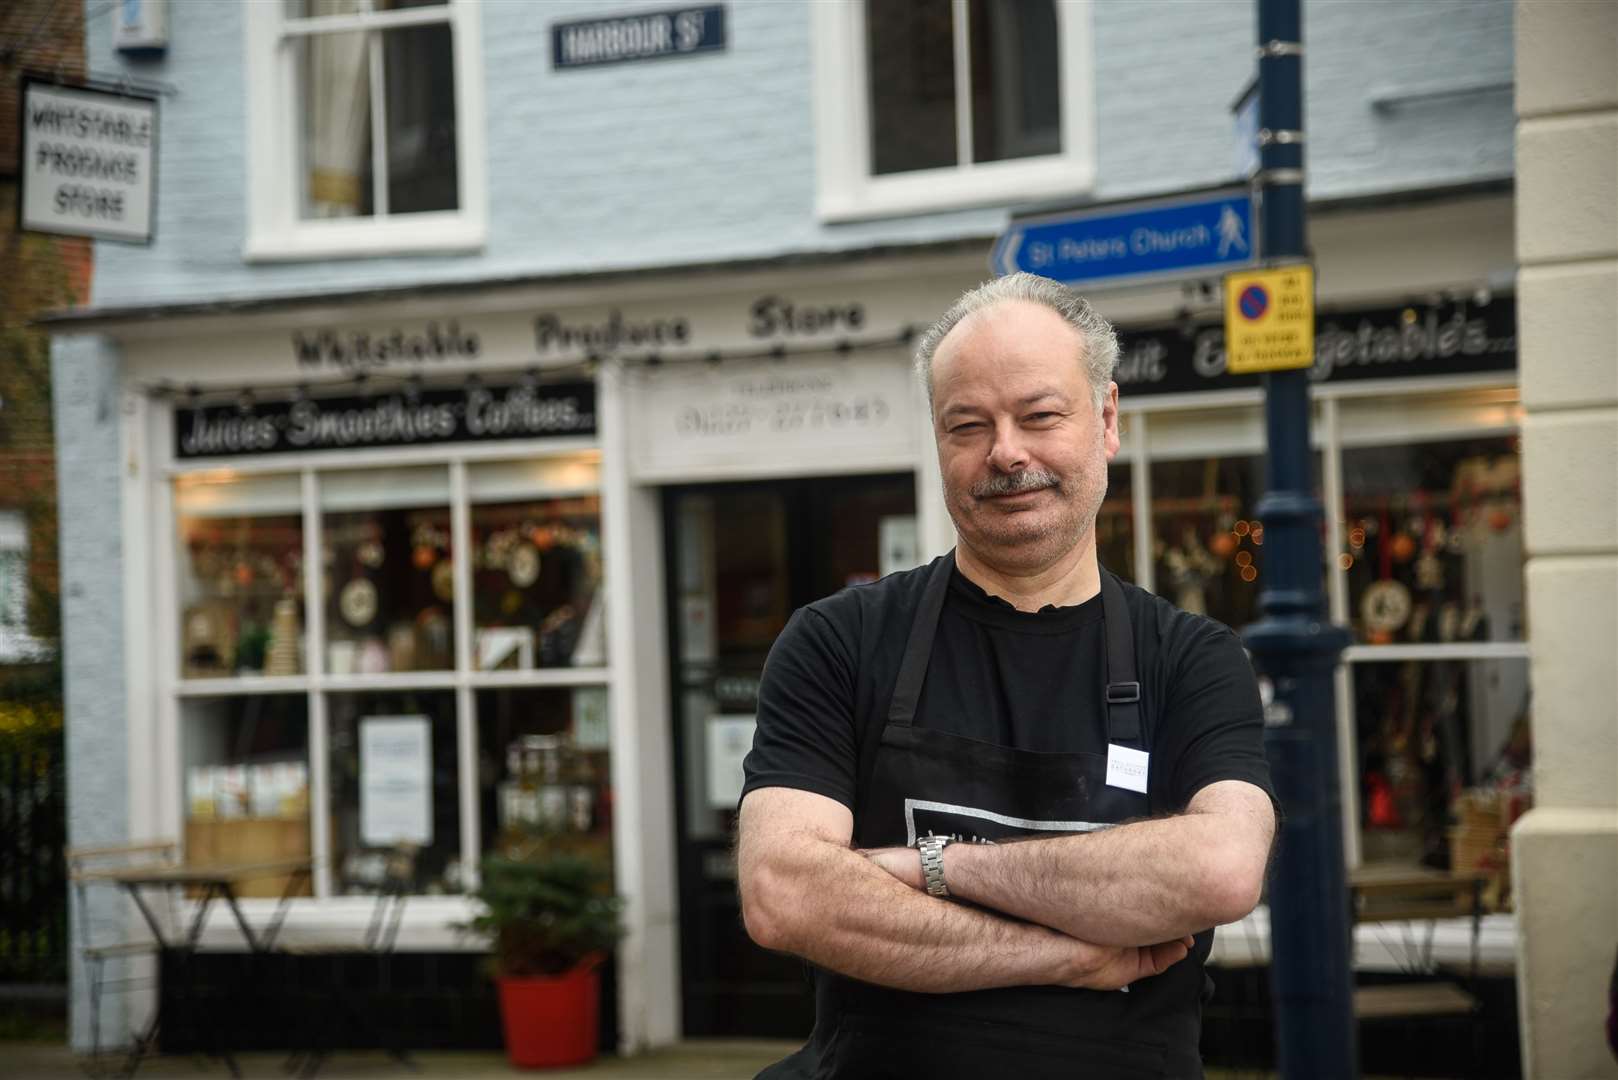 Steve Jones outside his store in Whitstable